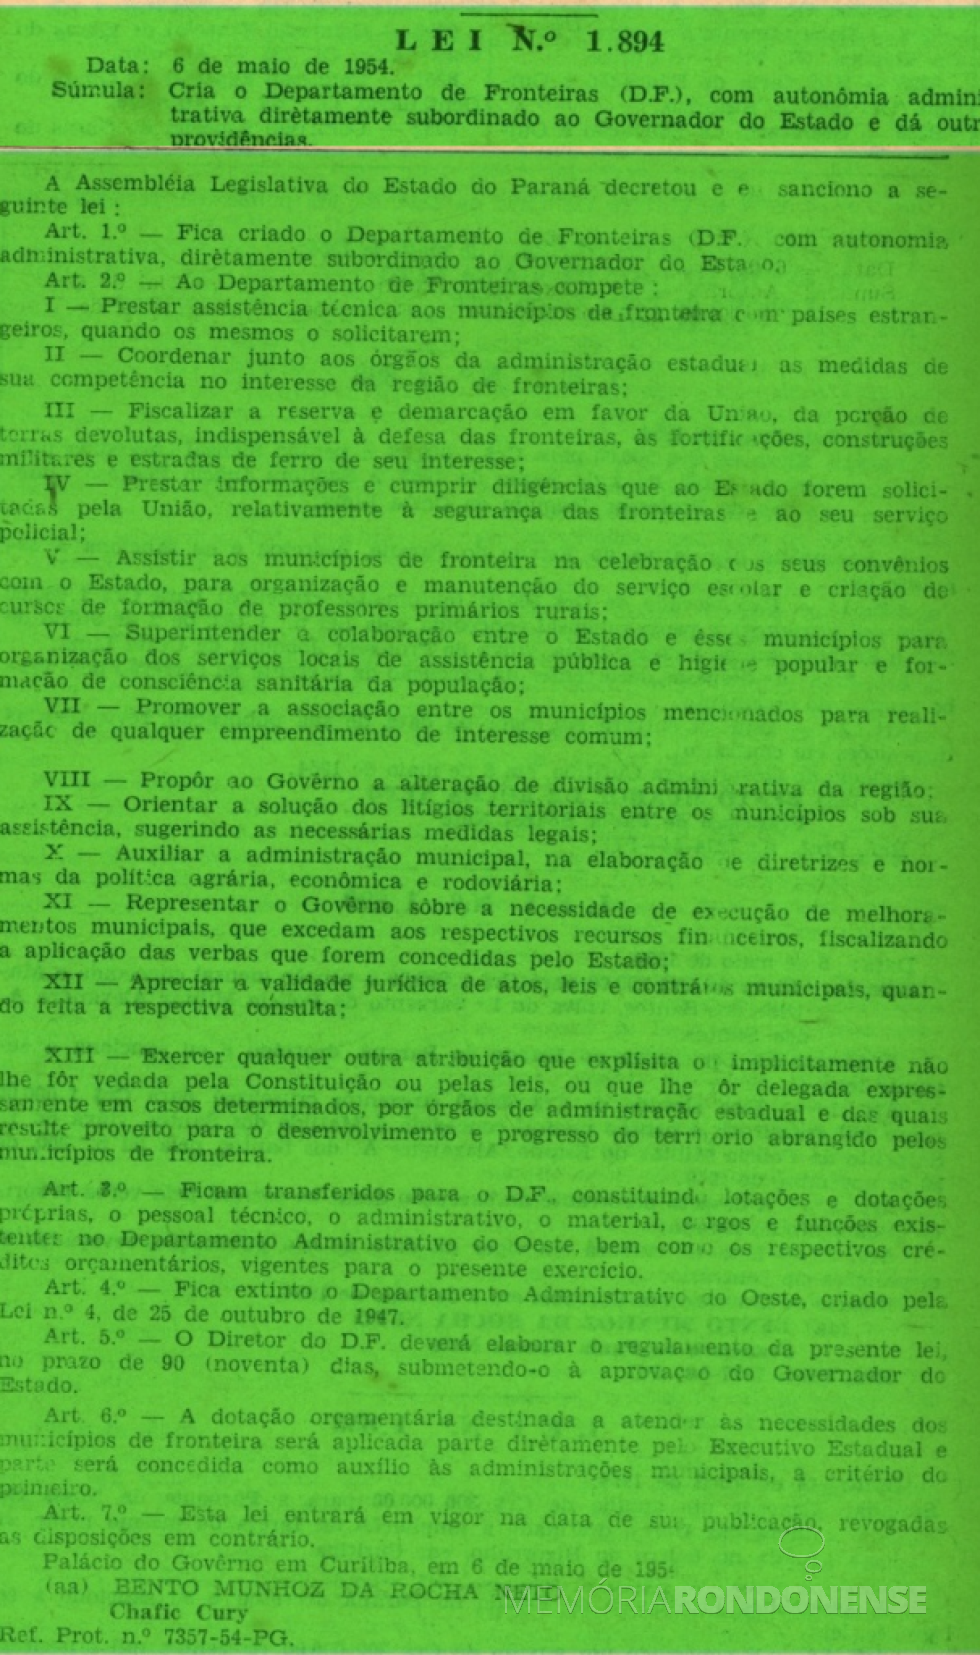 Cópia da publicação da Lei nº 1894/1954, no Diário oficial do Estado nº  53, de 10 de maio de 1954.
Imagem (Remontada do original): Acervo Arquivo Público do Paraná - FOTO 3 - 